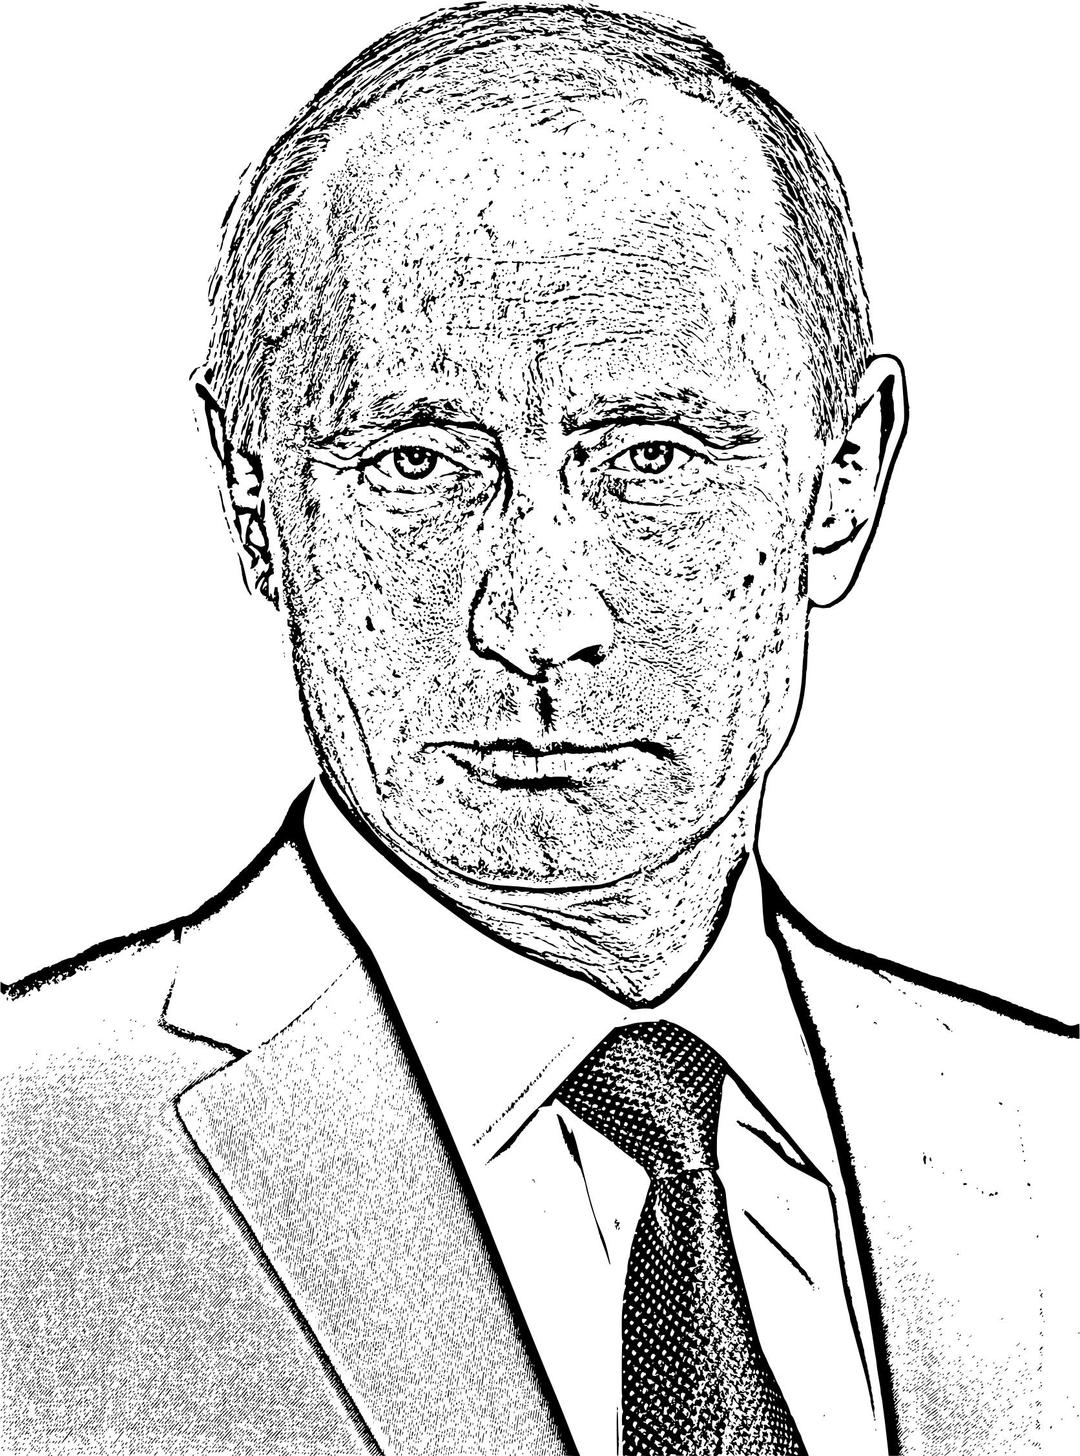 Vladimir Putin Photocopied Face png transparent